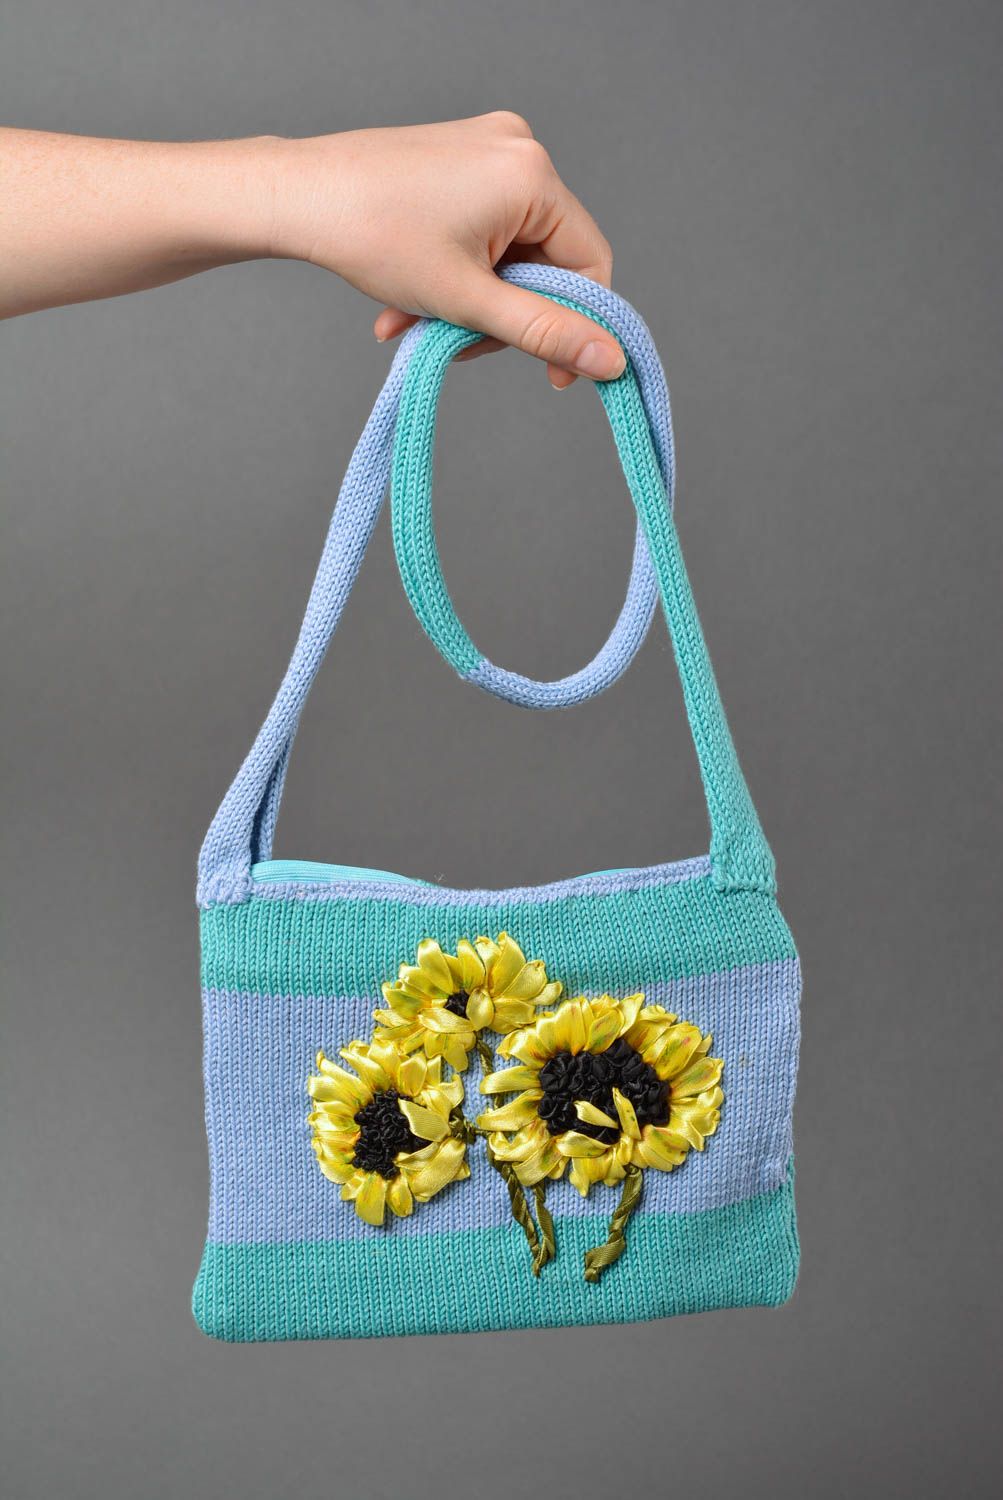 Сумка ручной работы женская сумка стильный аксессуар тканевая сумка подсолнухи фото 3